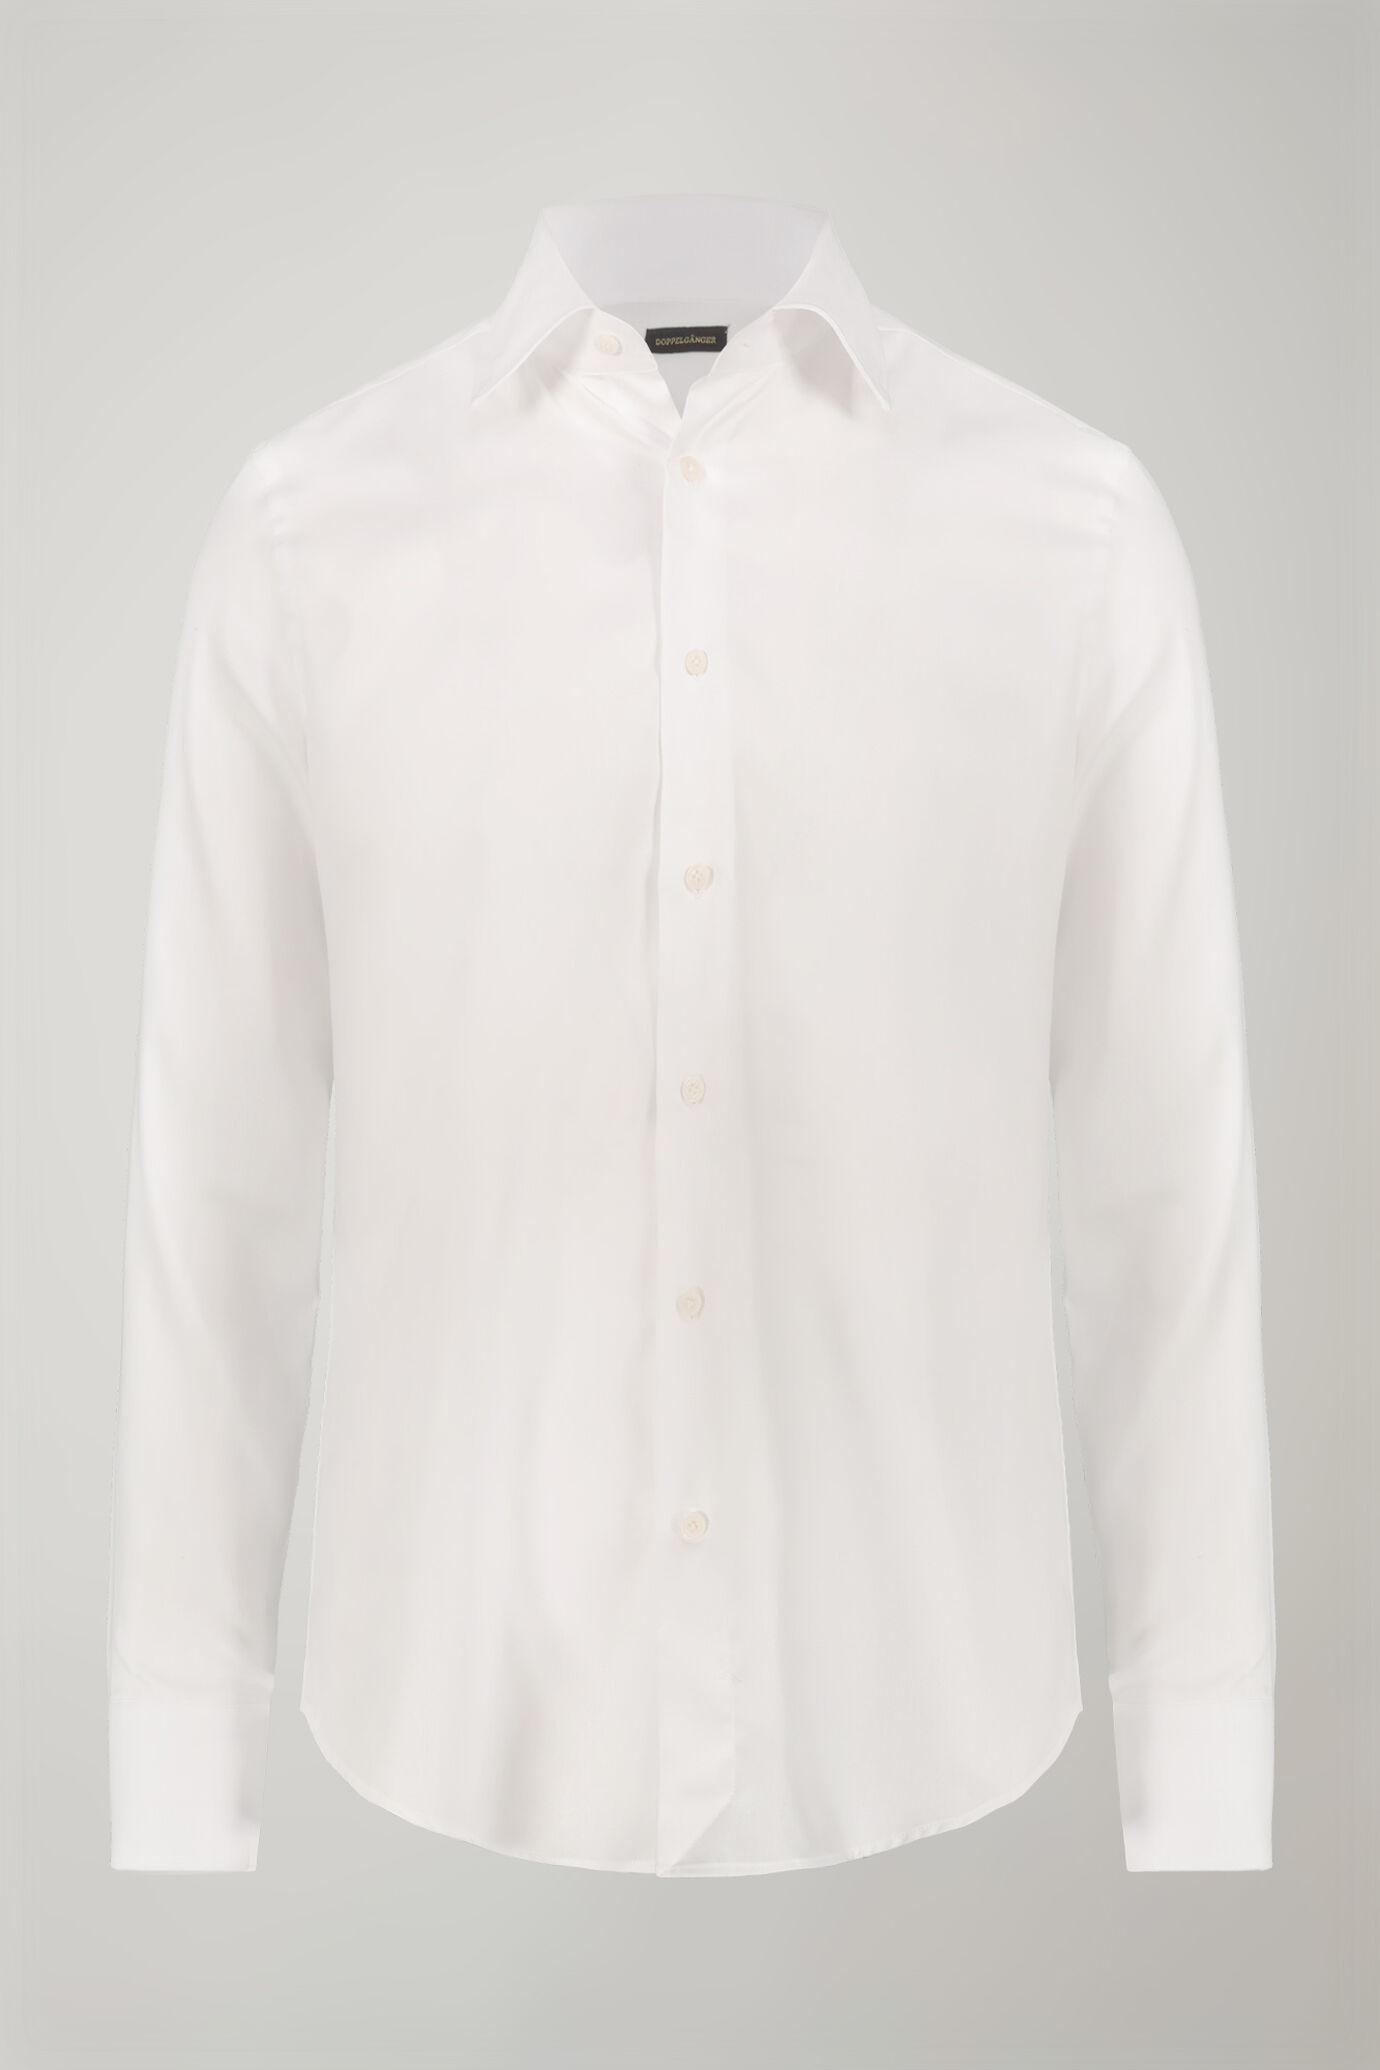 Camicia uomo collo classico 100% cotone tessuto oxford leggero tinta unita regular fit image number 5